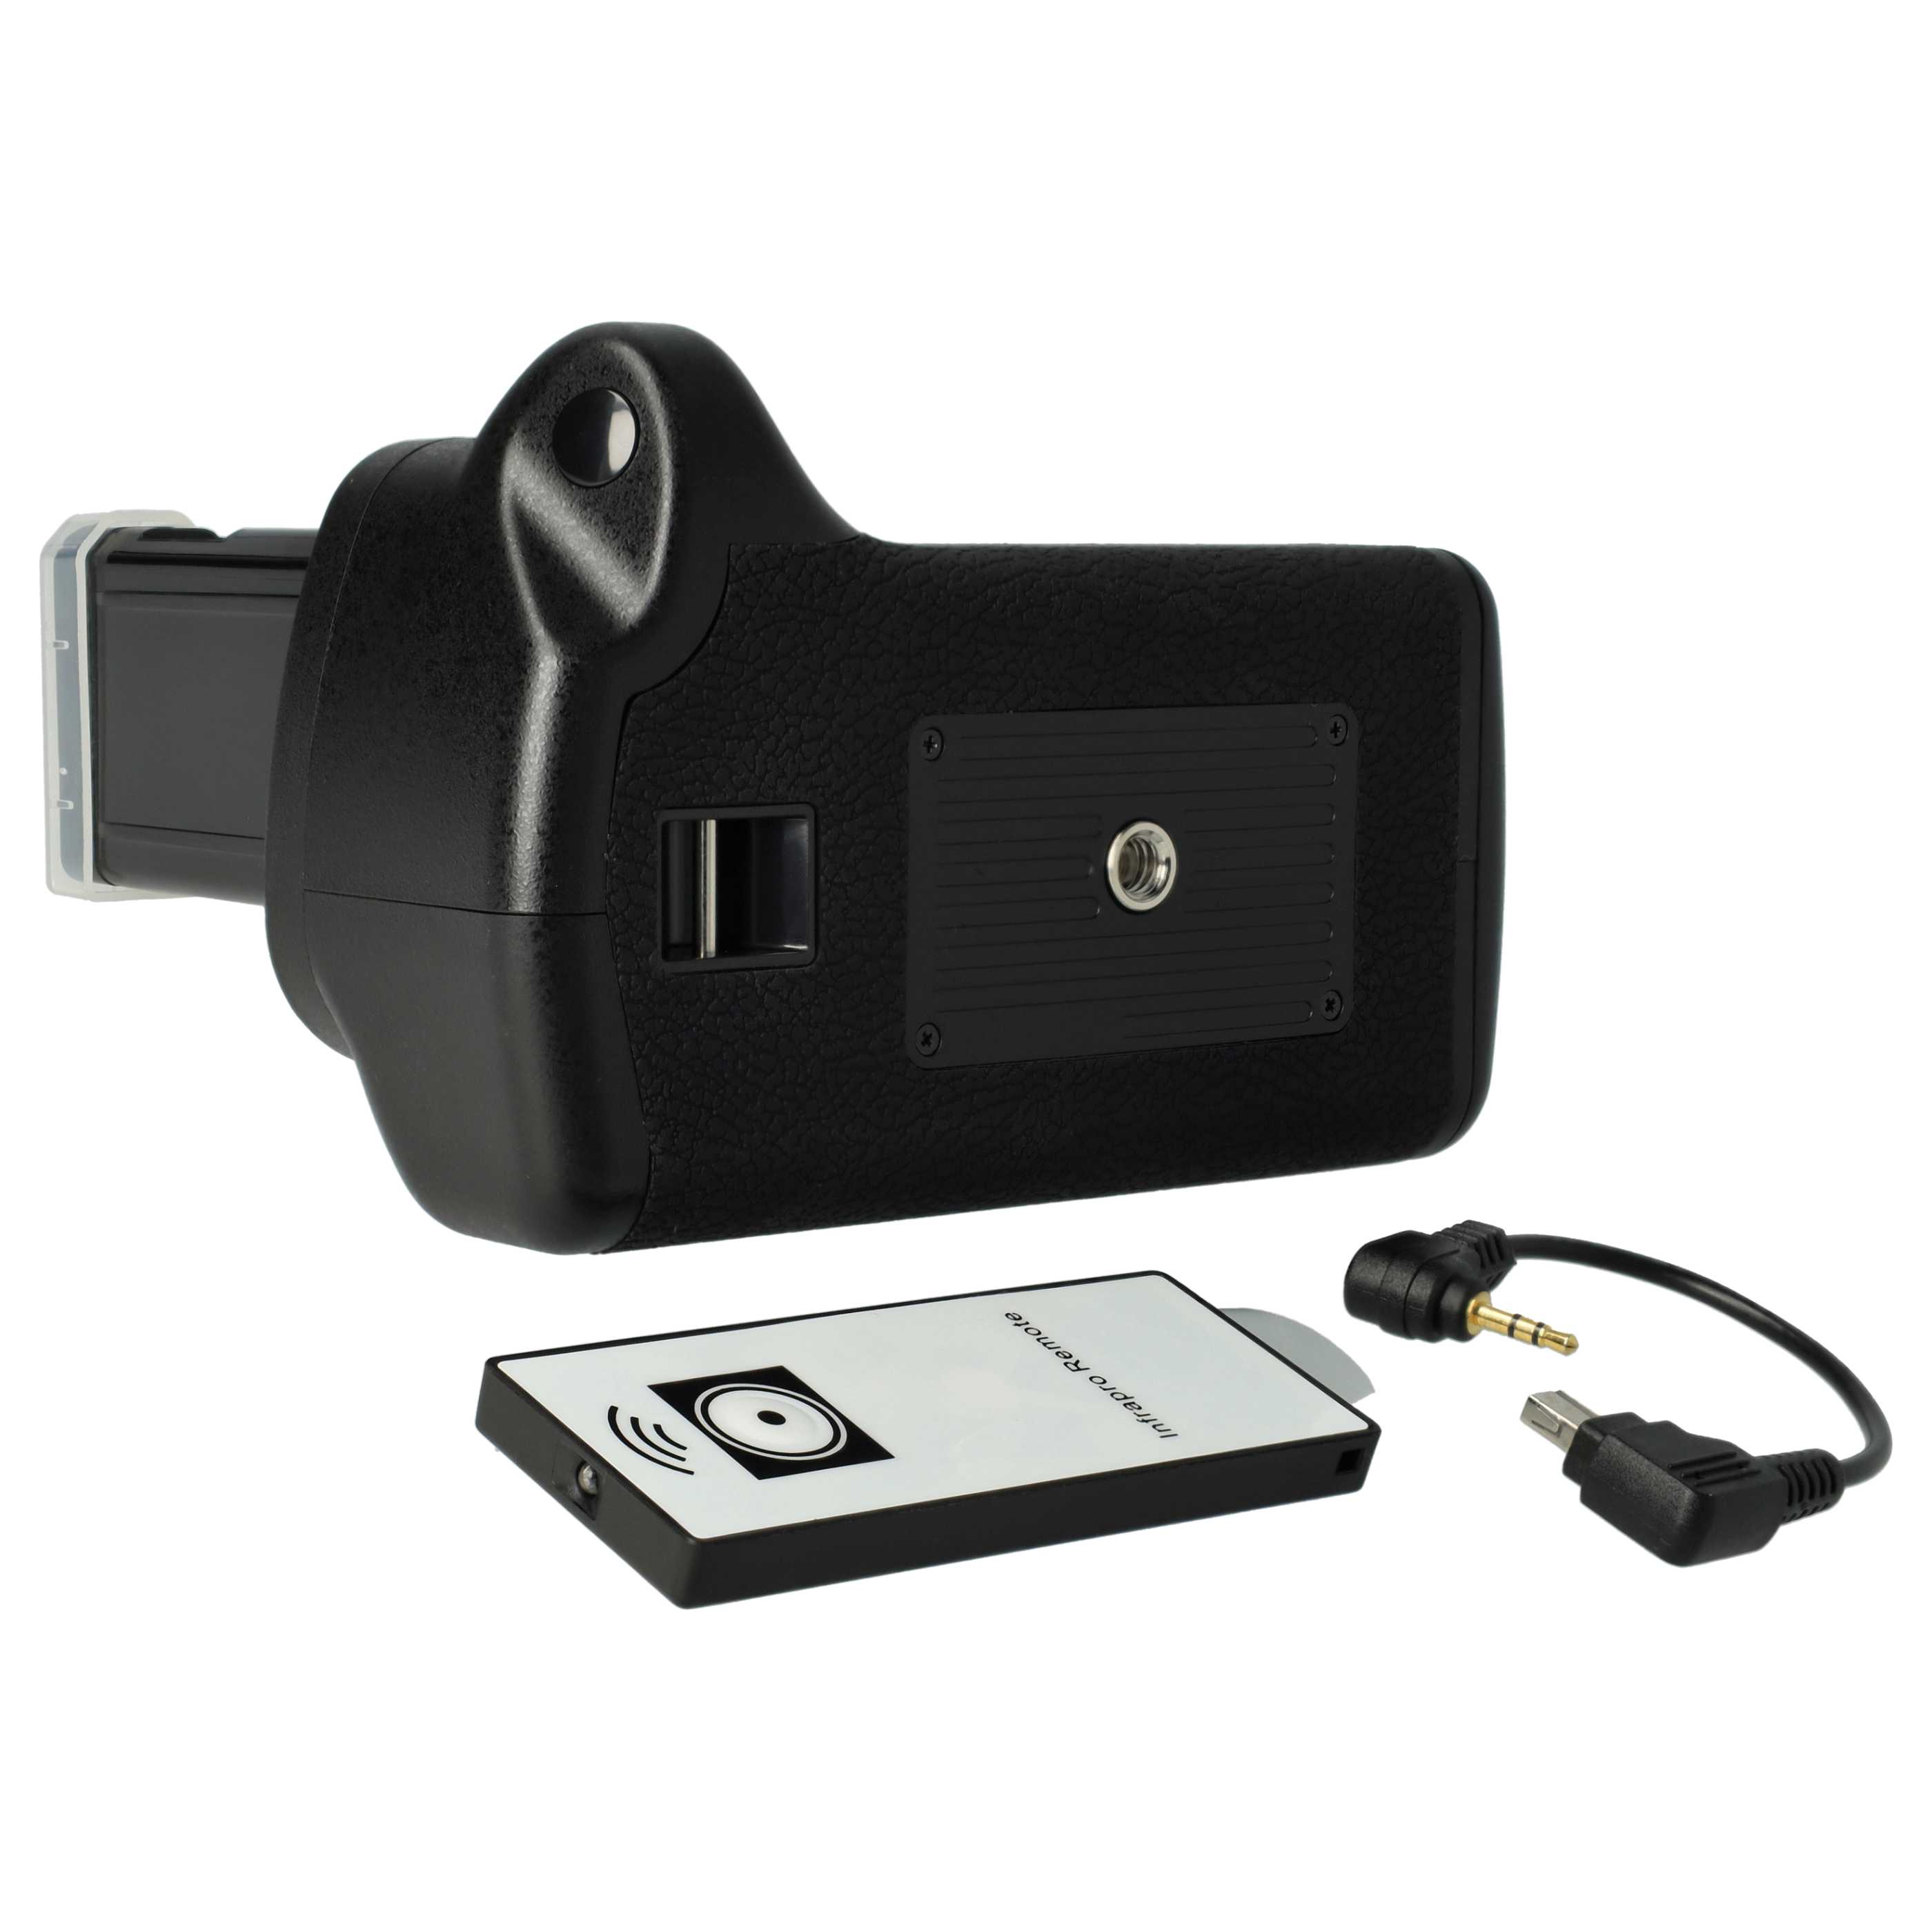 Batterie grip pour appareil photo Nikon D5100, D5200, D5300 - avec molette, déclencheur 